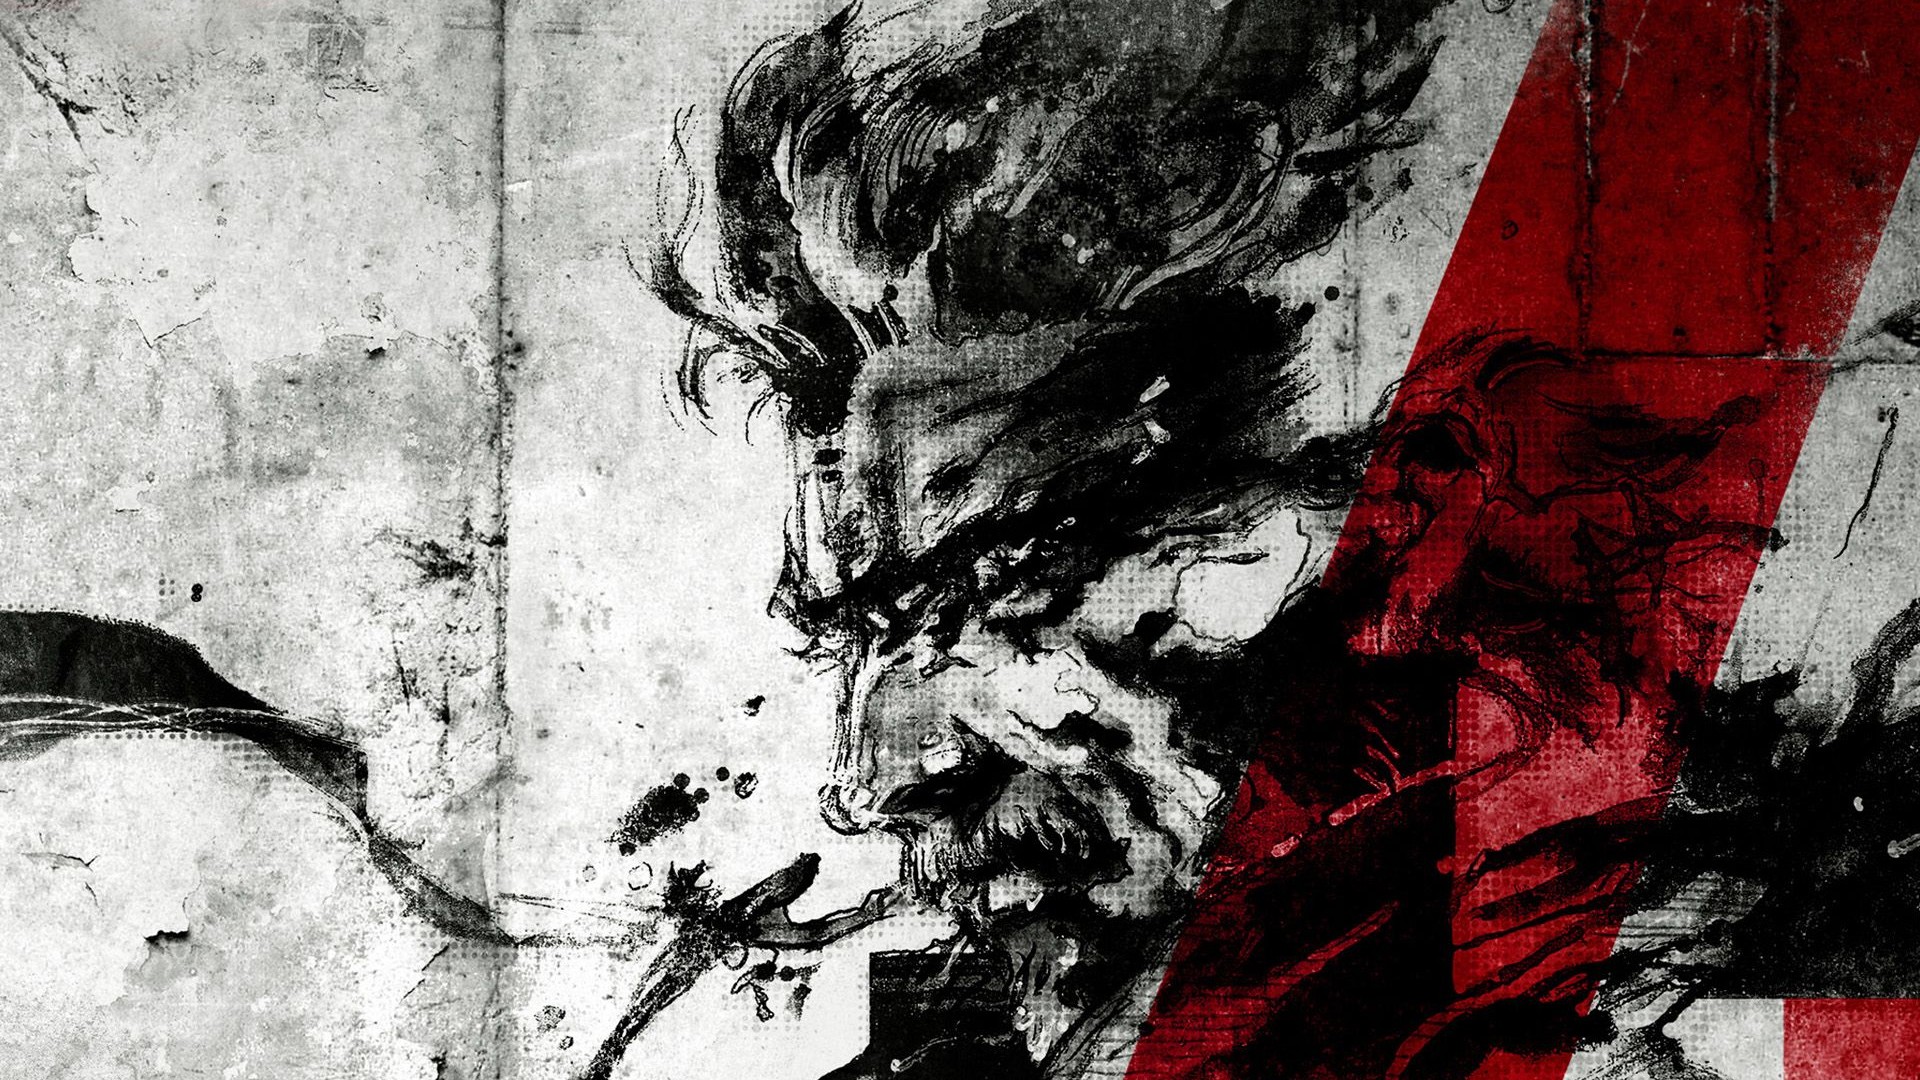 Metal Gear Solid HD Wallpaper | 1920x1080 | ID:27101